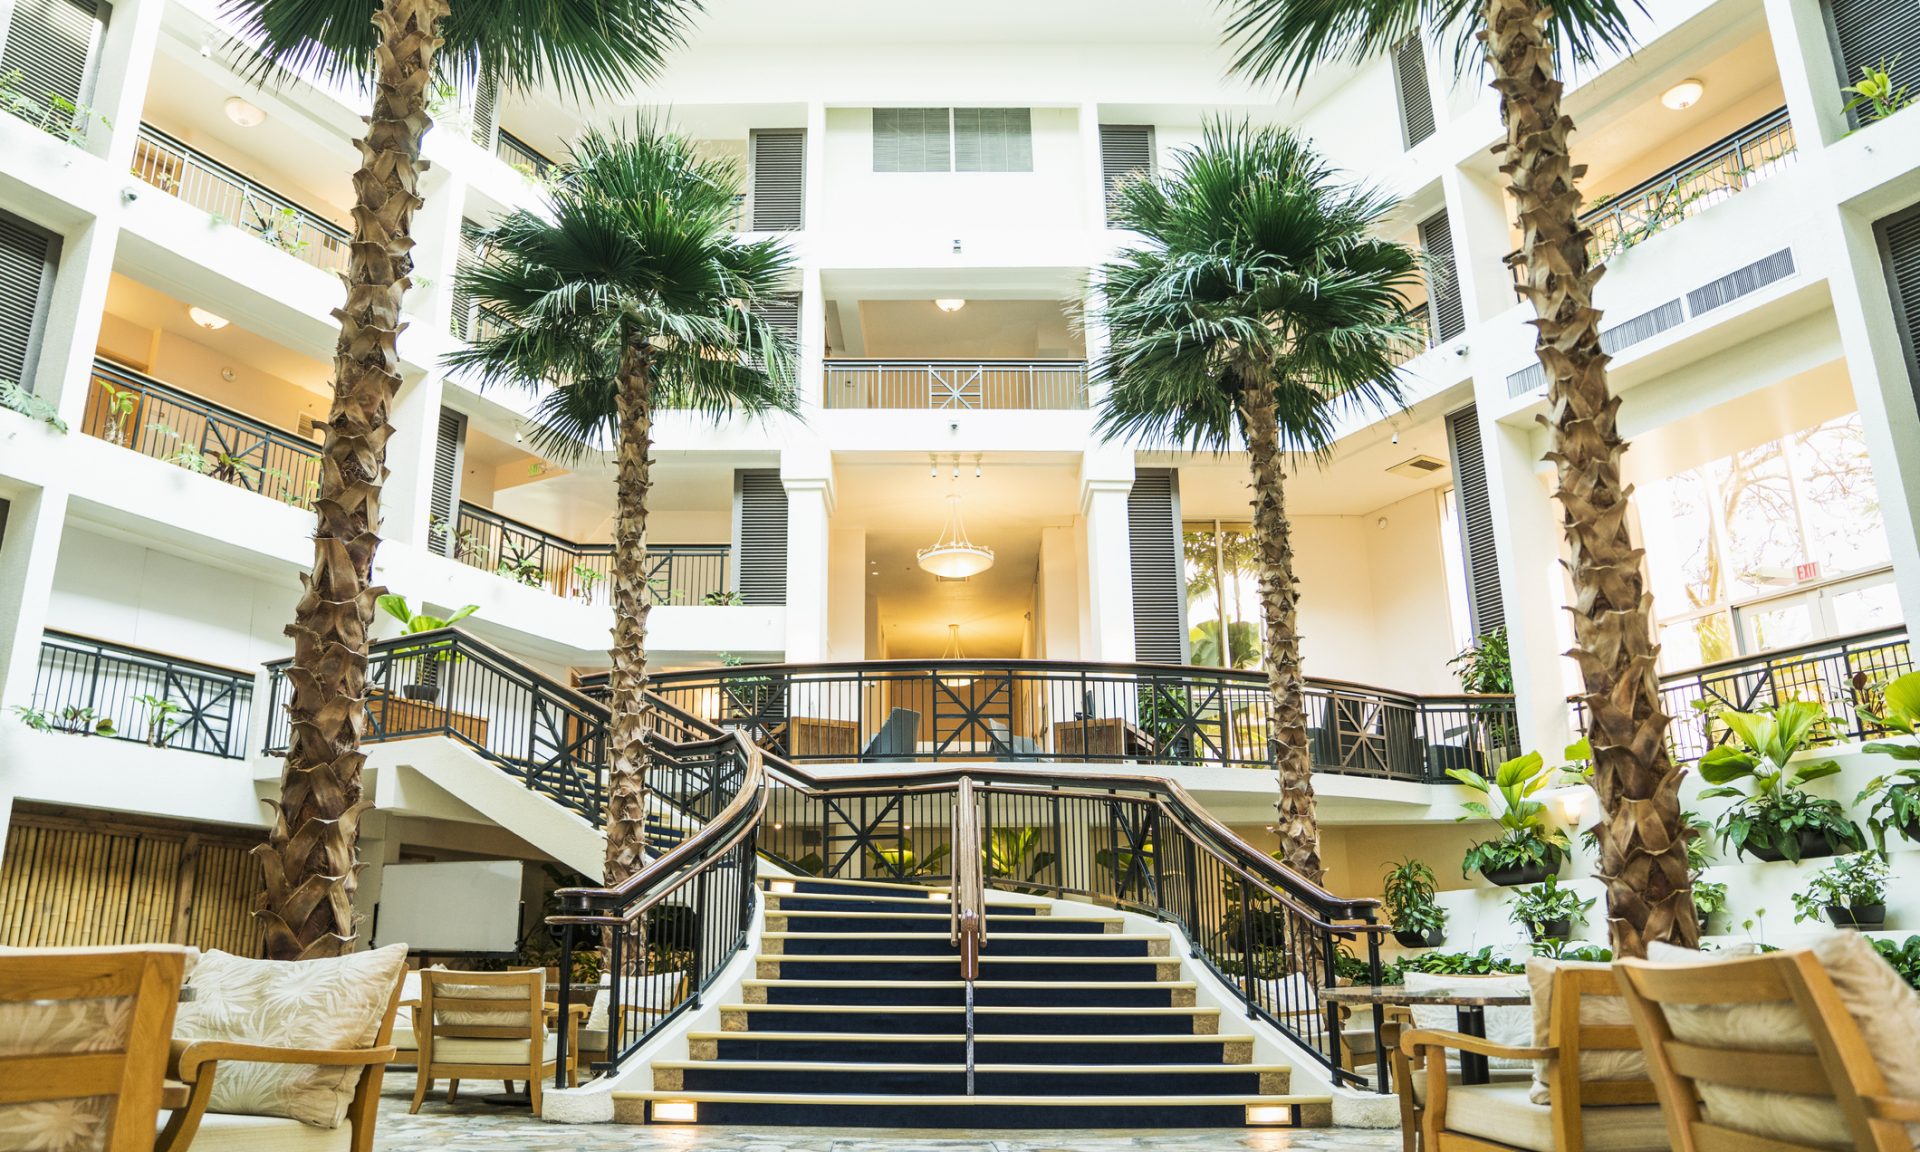 Khách sạn của chúng tôi là thành viên của Luxury Hotels of the World - một trong những tập đoàn khách sạn danh giá nhất thế giới. Với sứ mệnh mang lại trải nghiệm đích thực cho khách hàng, chúng tôi sẽ không làm Quý khách thất vọng với một số lựa chọn phòng nghỉ tuyệt vời. 